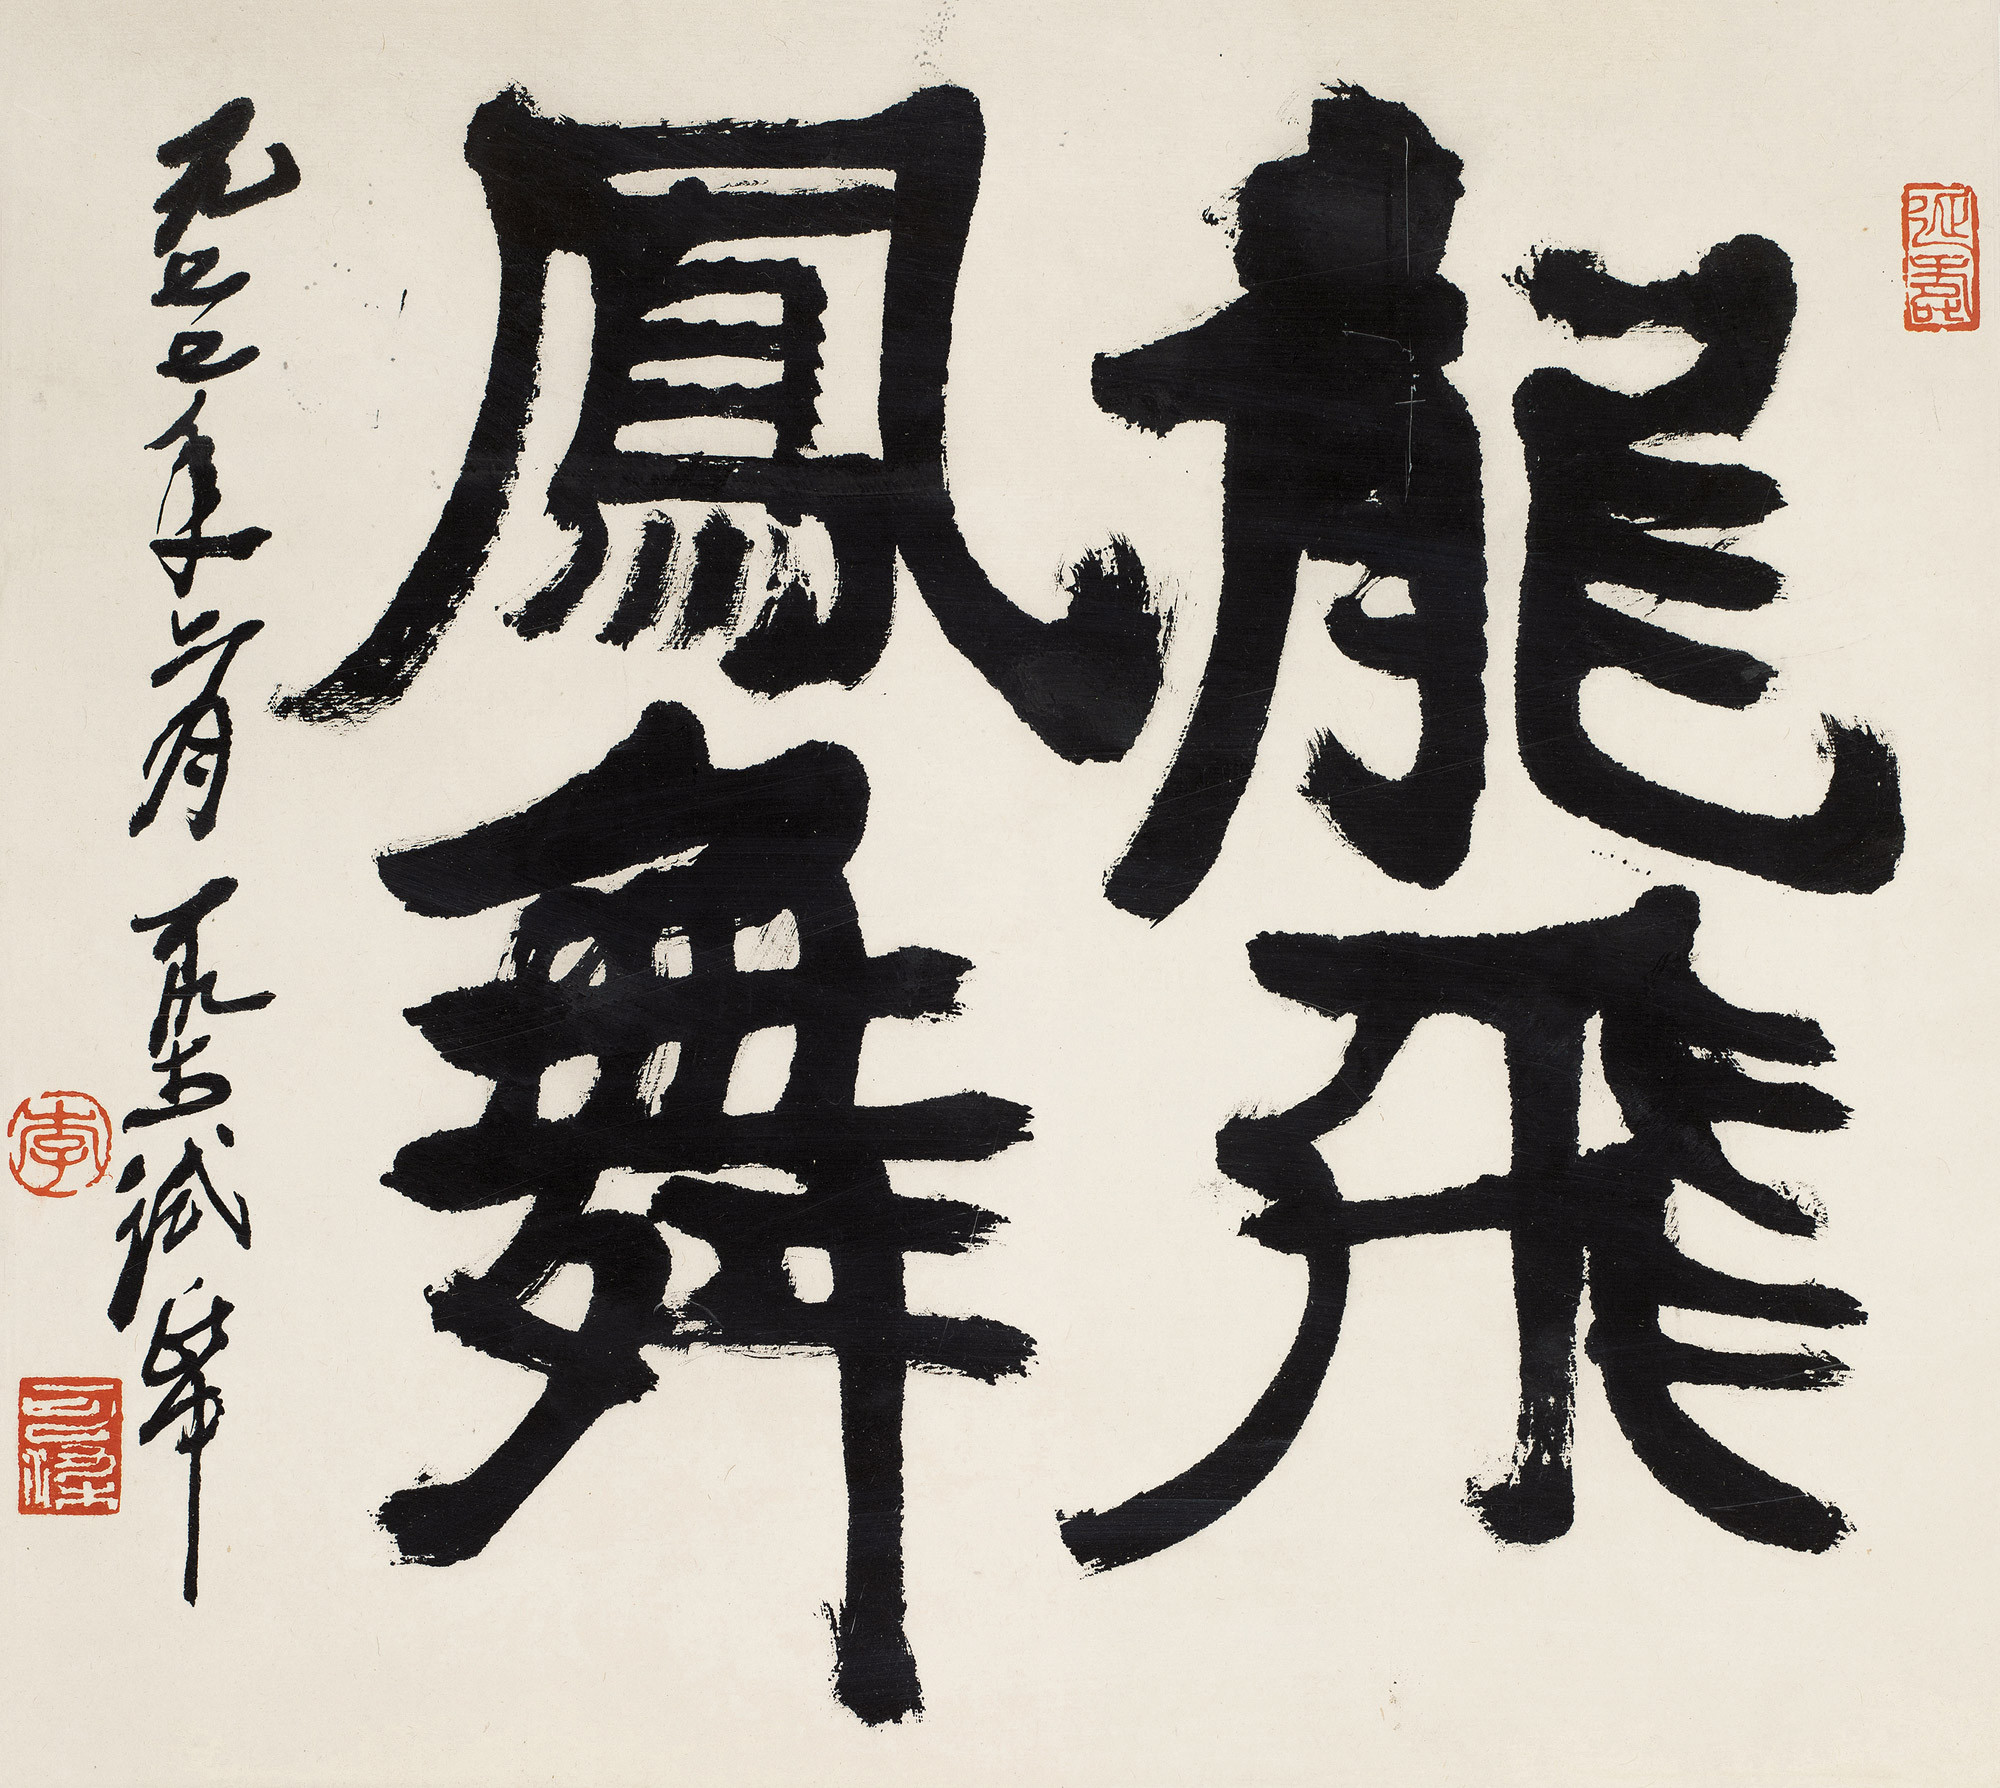 Calligraphy  in Running Script